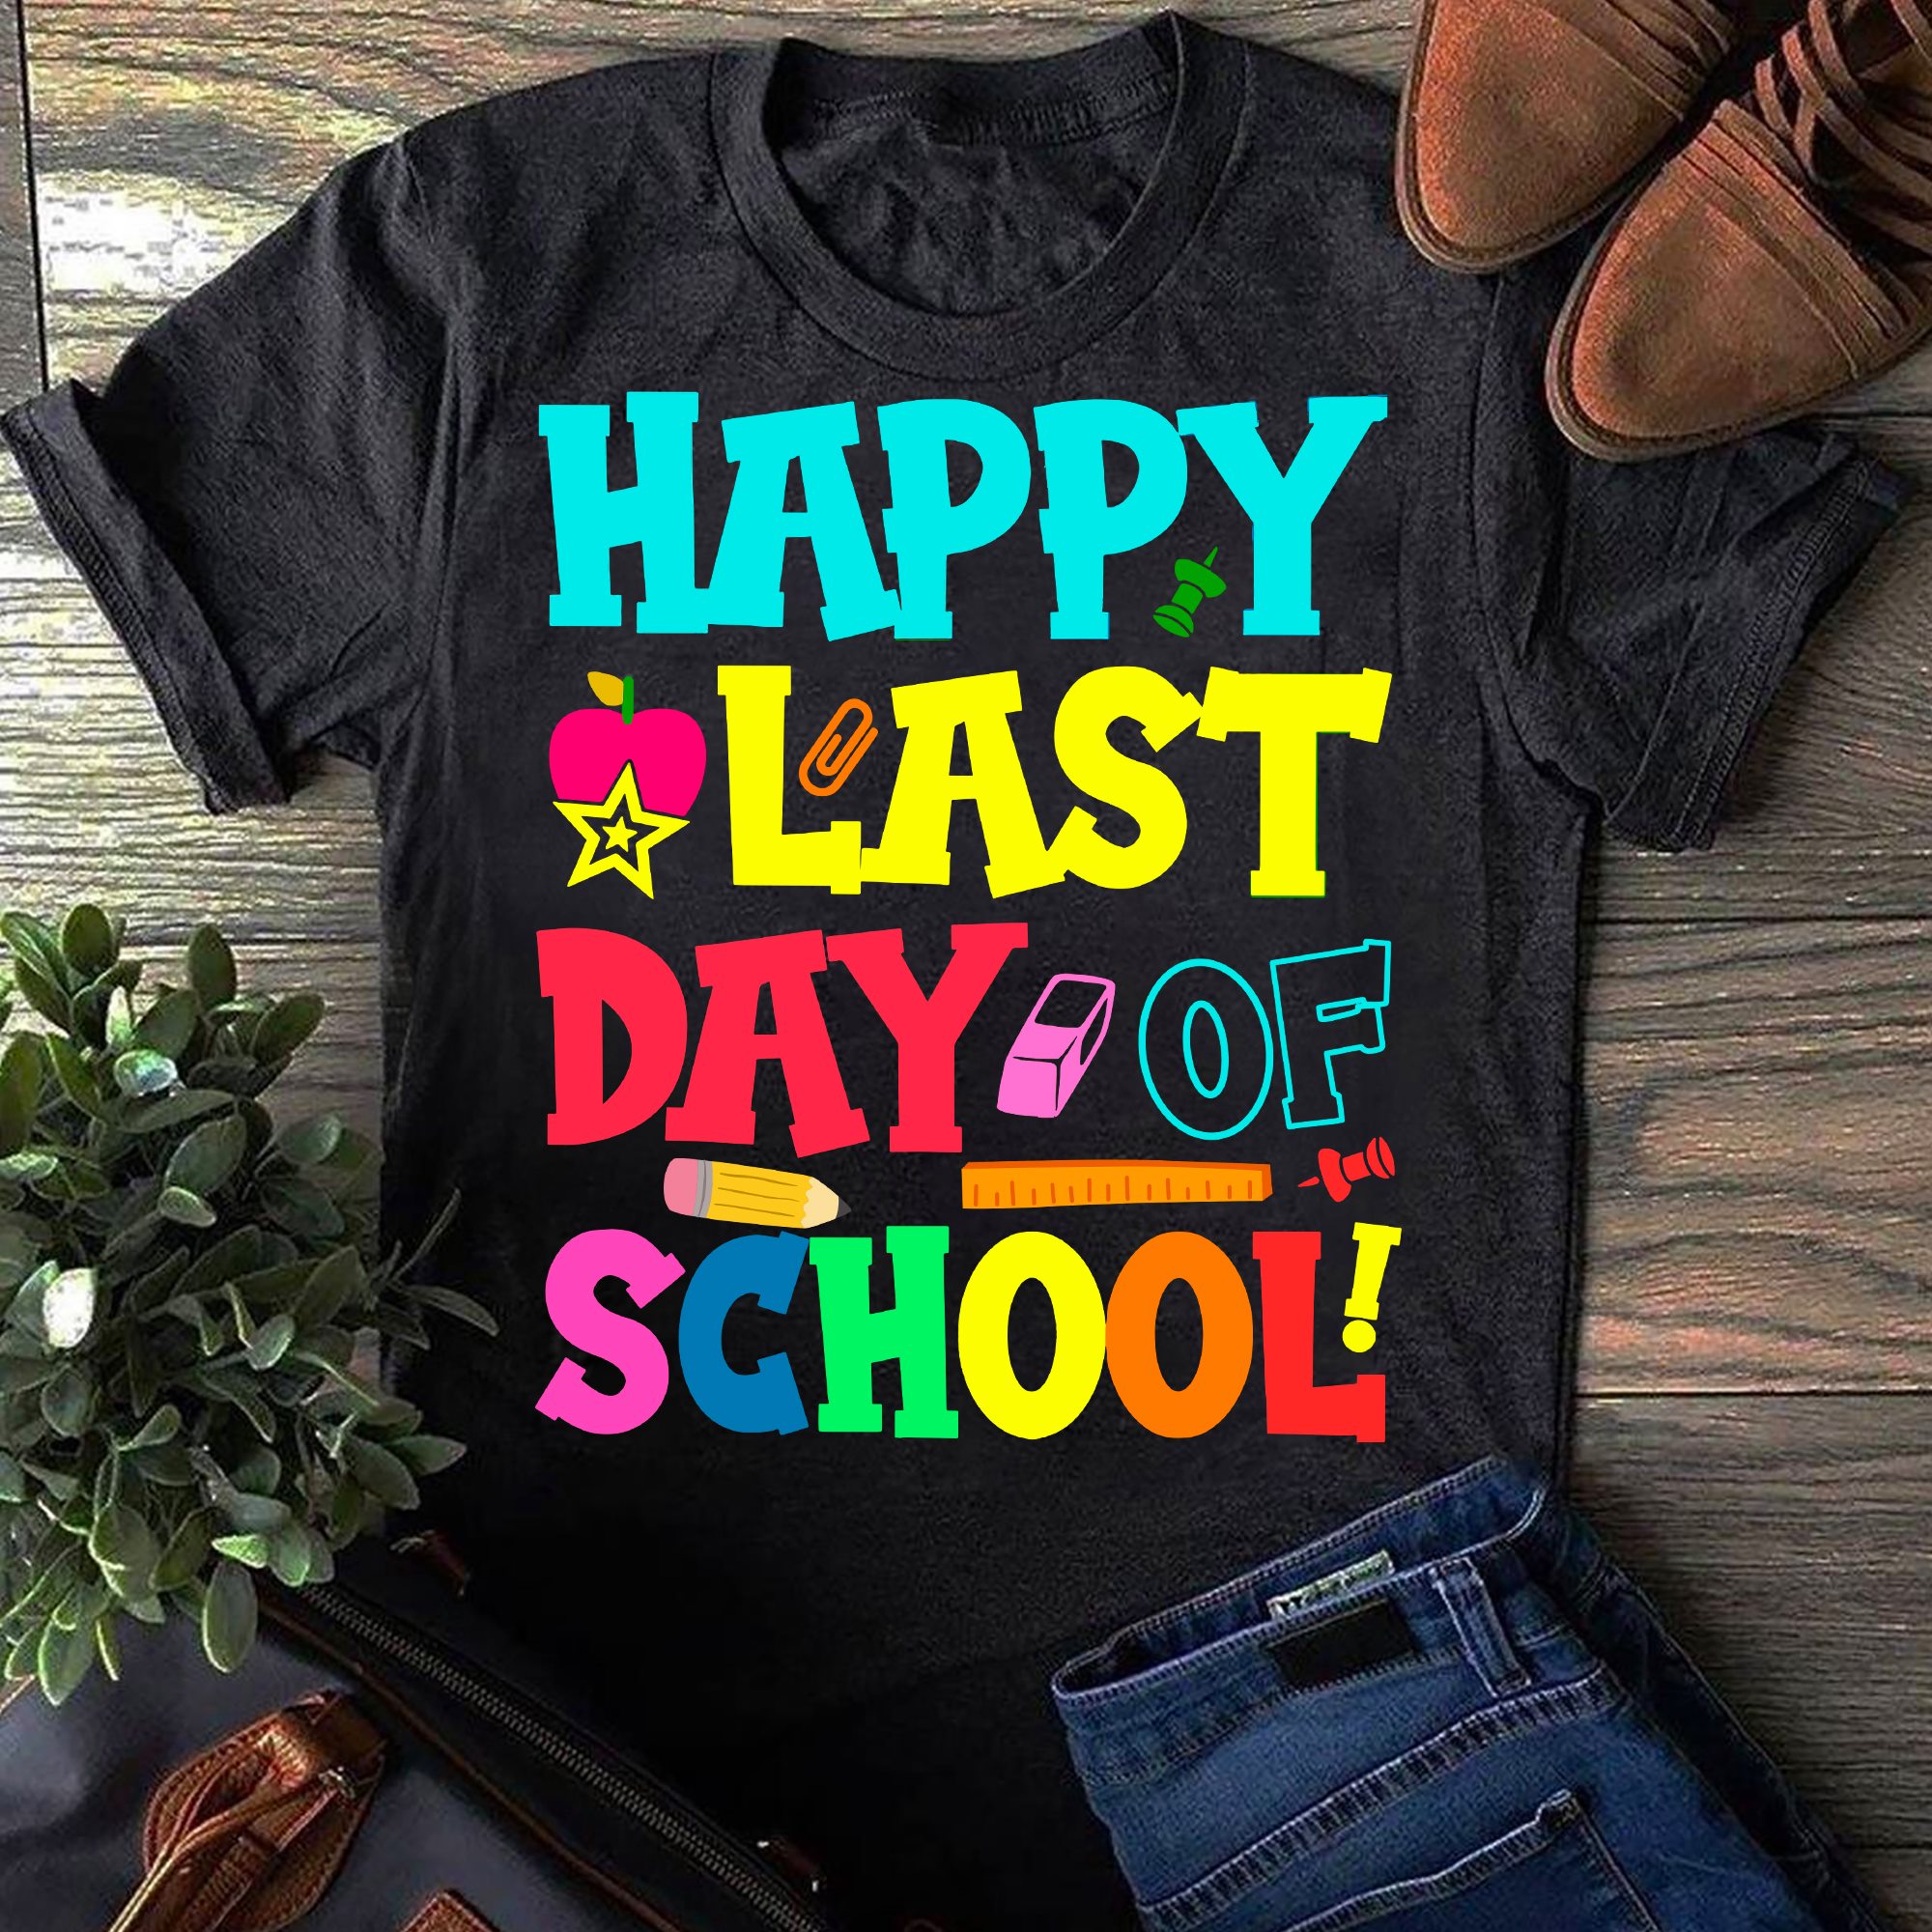 Happy last day of school